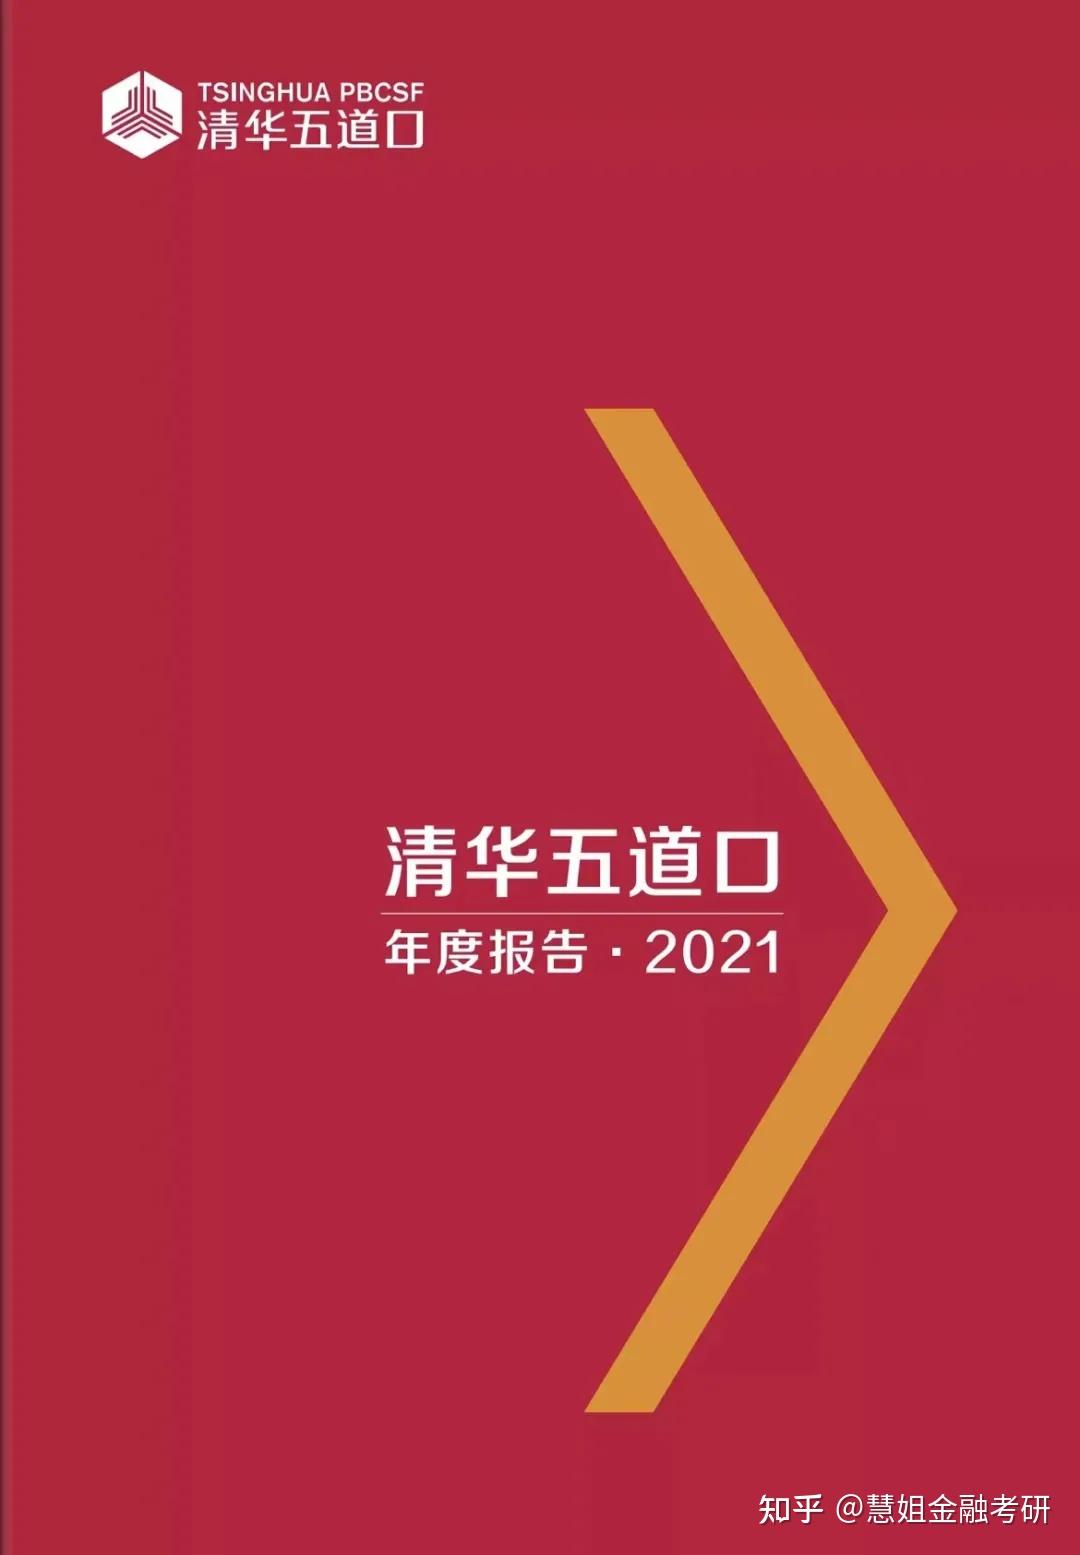 清华大学五道口金融学院2021年度报告金融专硕统考录取率22